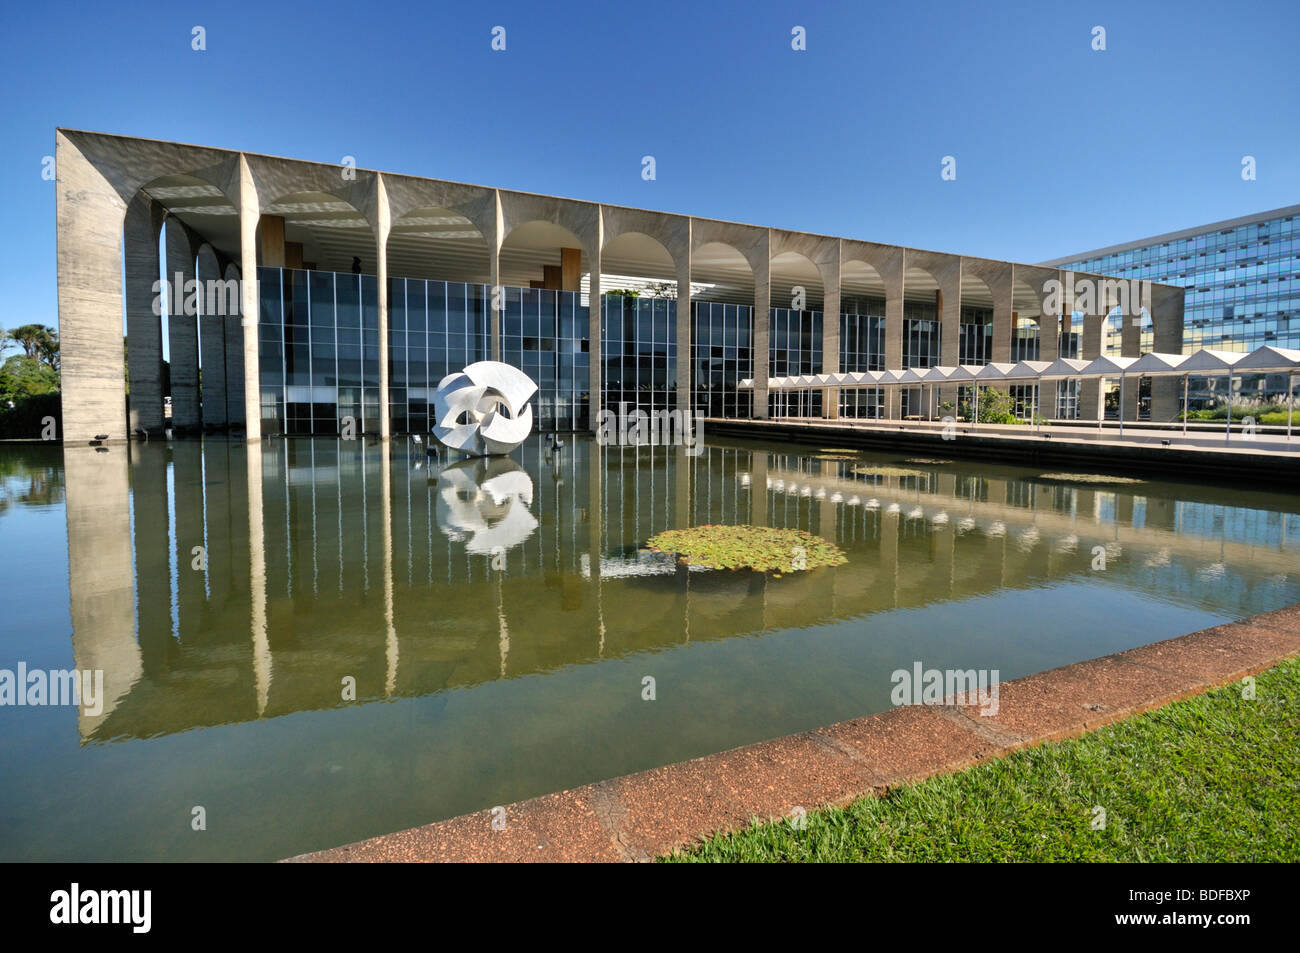 Itamaraty Palace, il Ministero degli Affari Esteri, progettato dall'architetto Oscar Niemeyer, Brasilia, Distrito Federal, Brasile Foto Stock